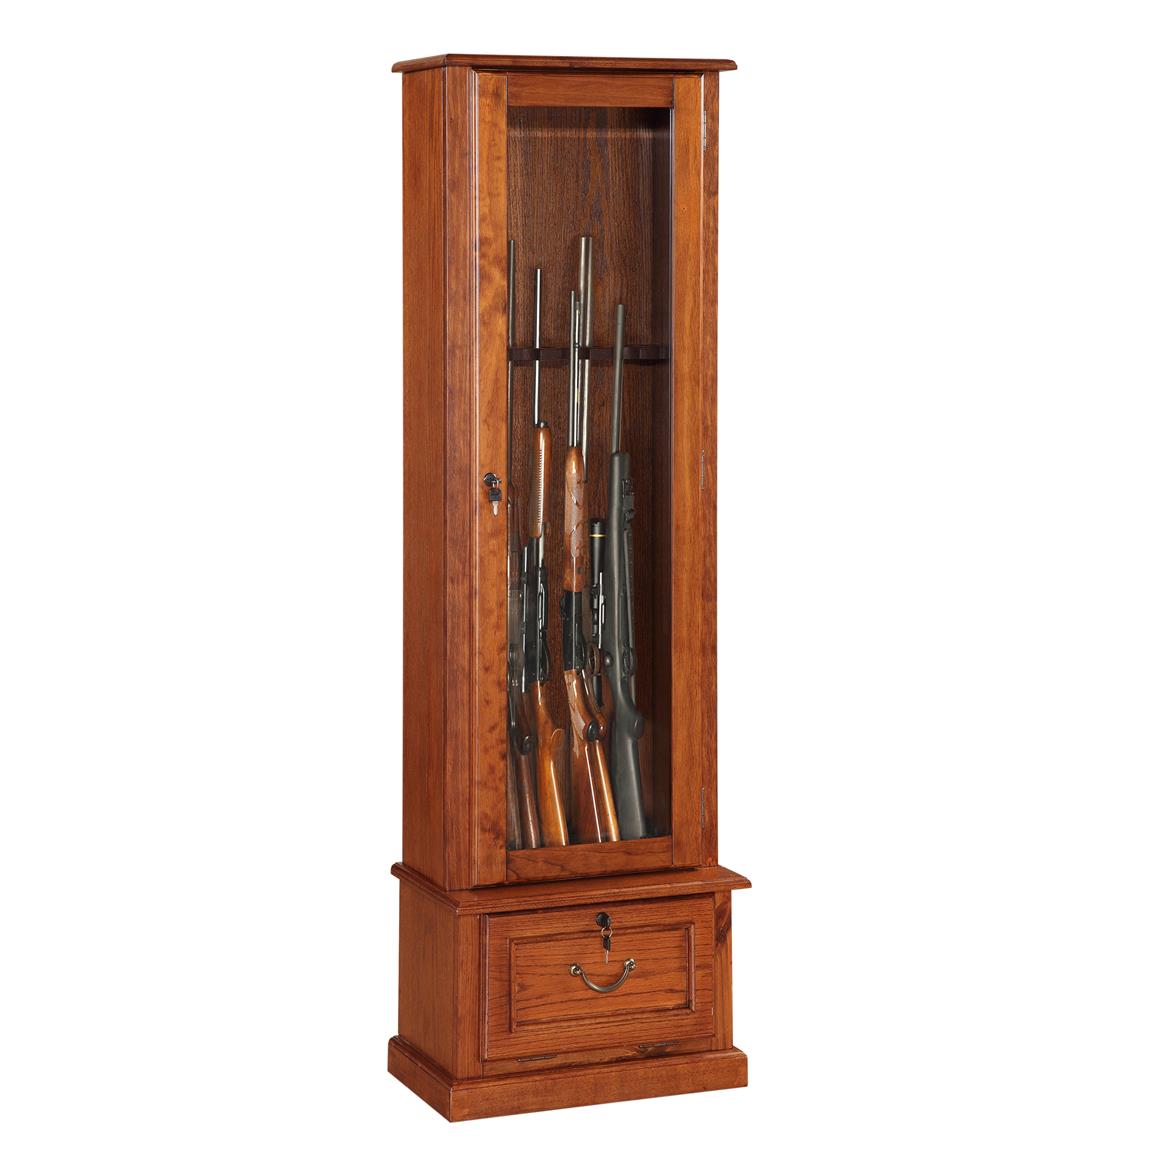 8 Gun Cabinet, American Furniture Classics - 654914, Gun 